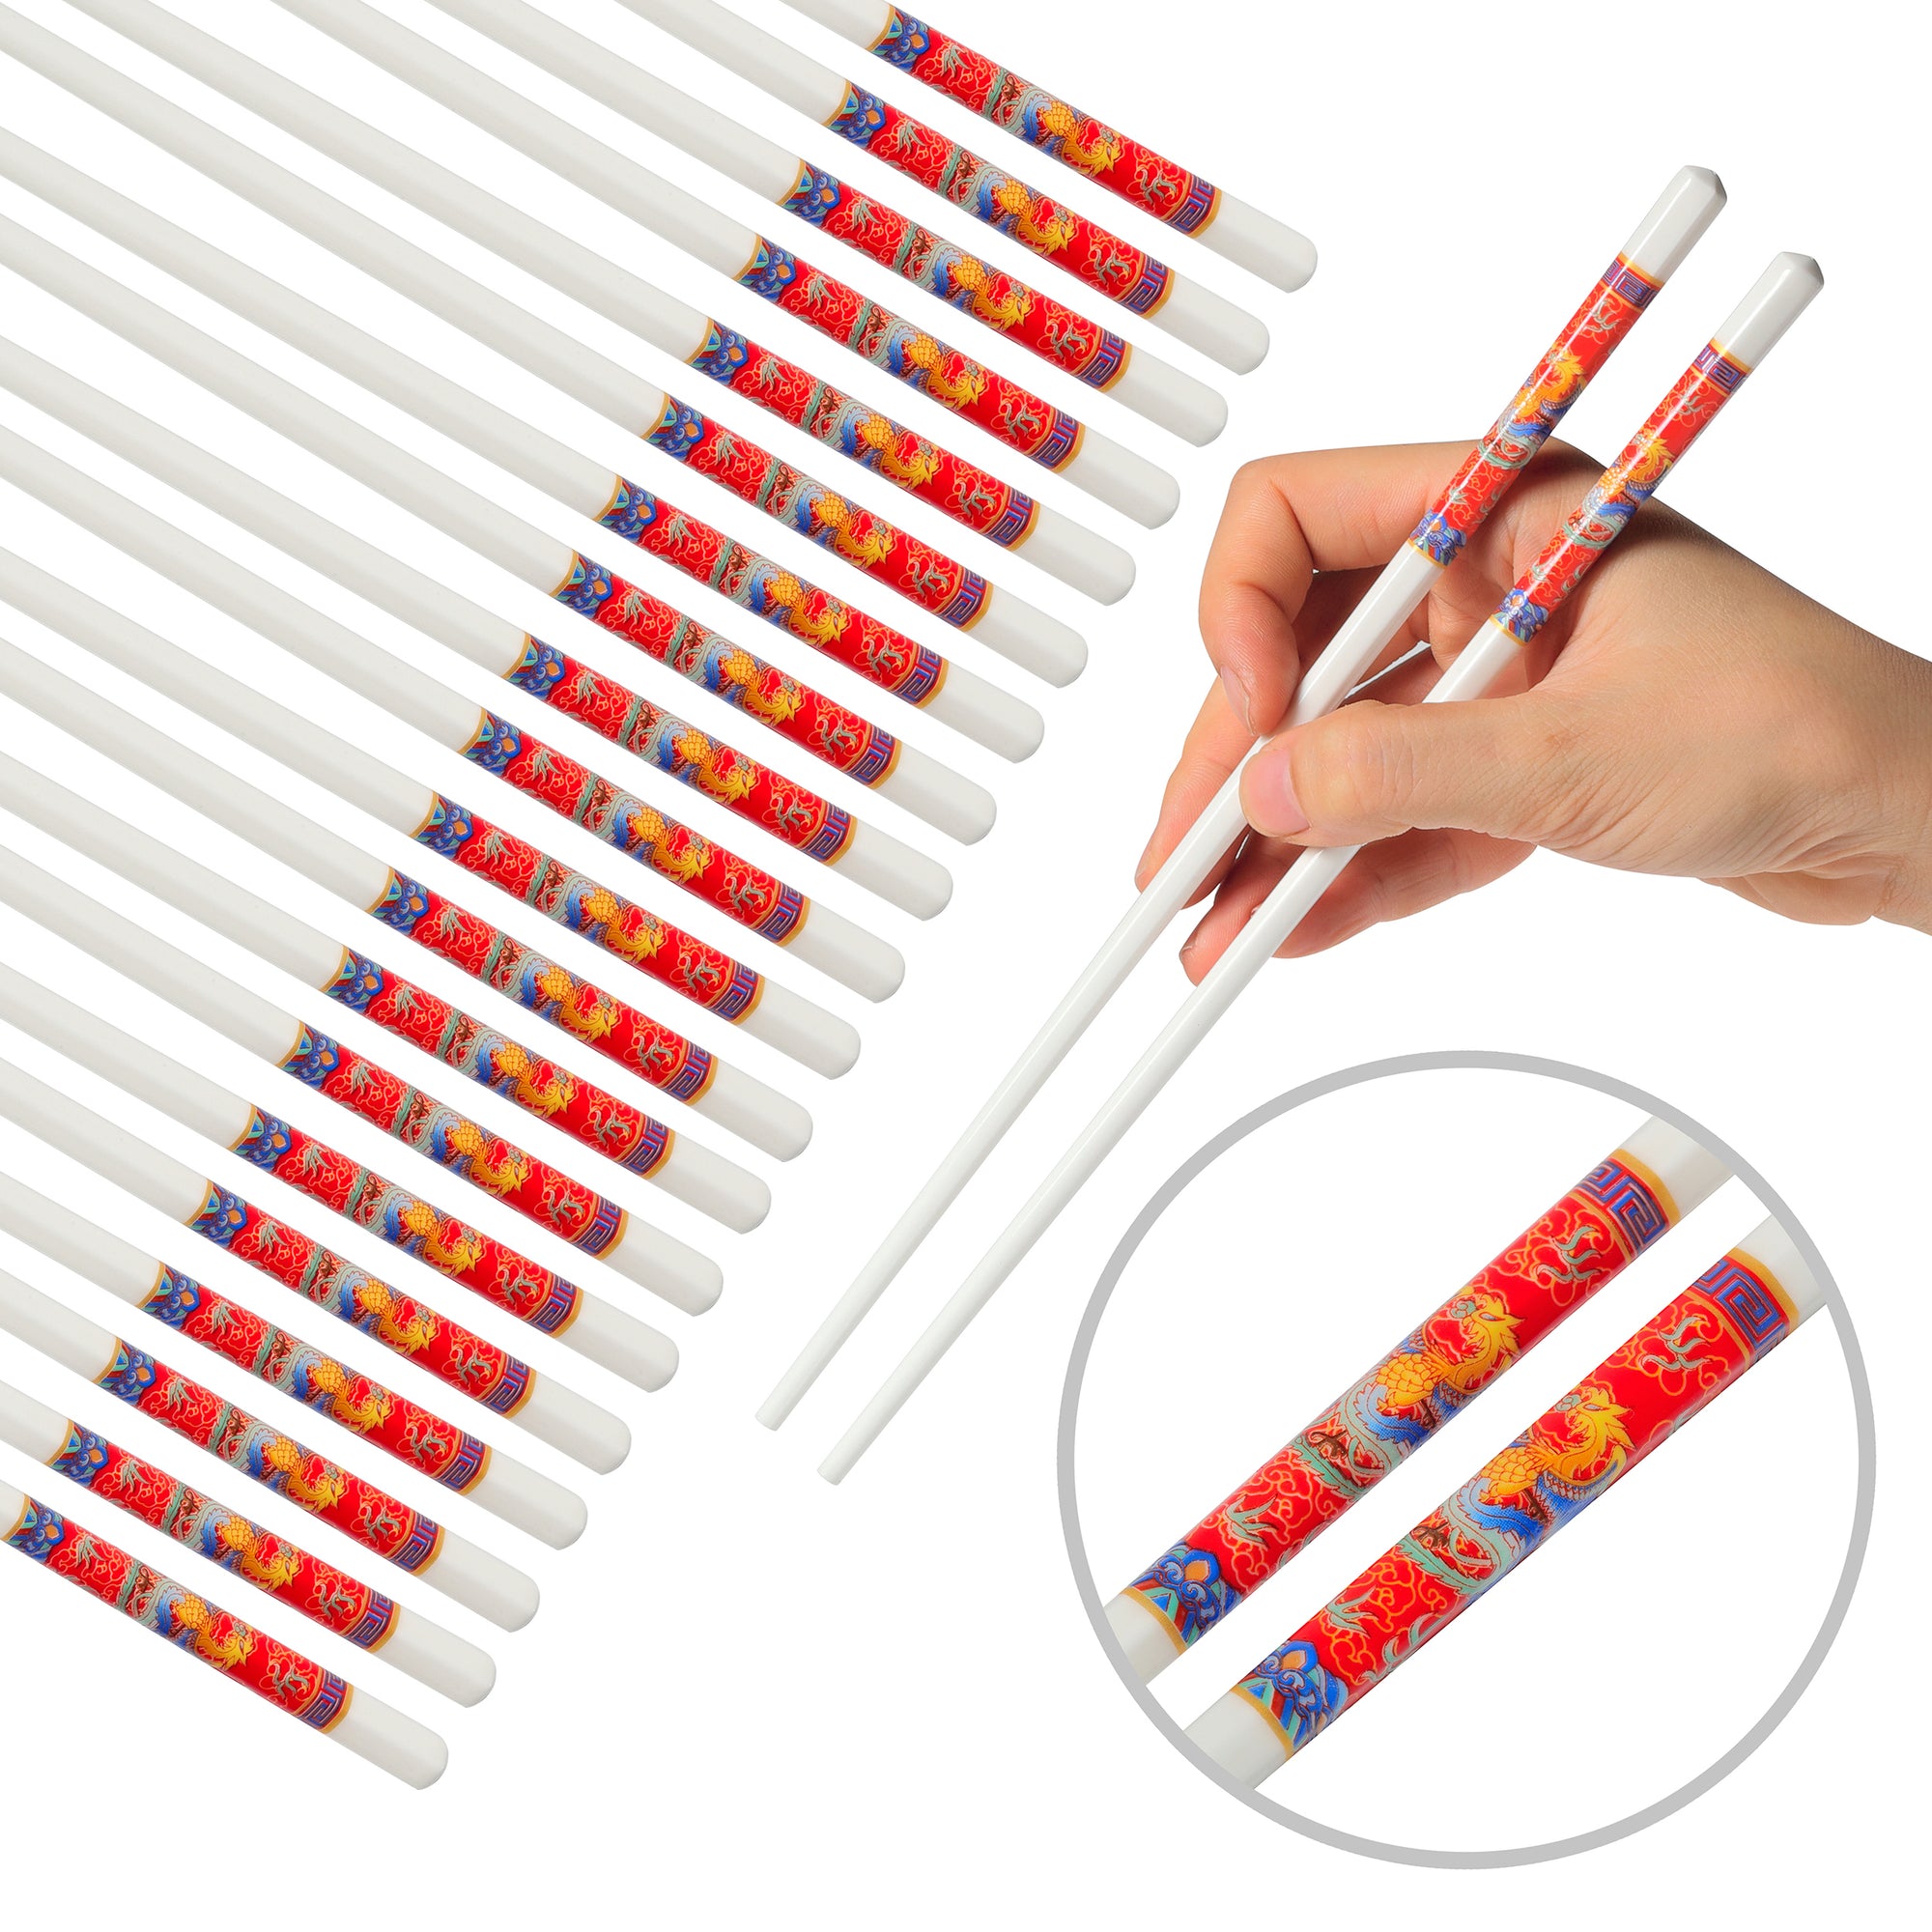 Ceramic Chopsticks (10 sets)